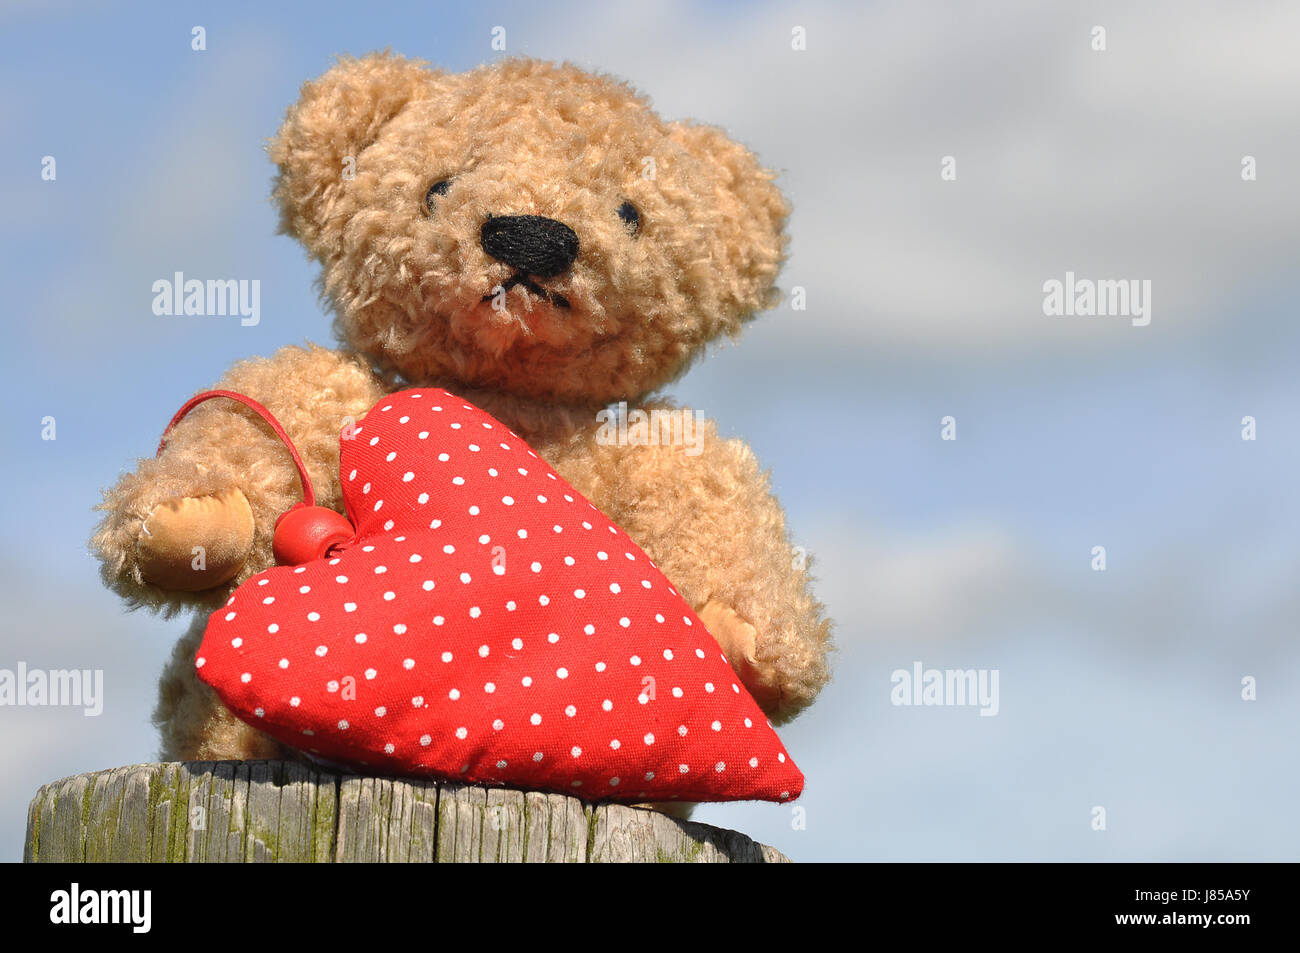 bear teddy bear teddybear hearts cuddly toy love in love fell in love heart Stock Photo